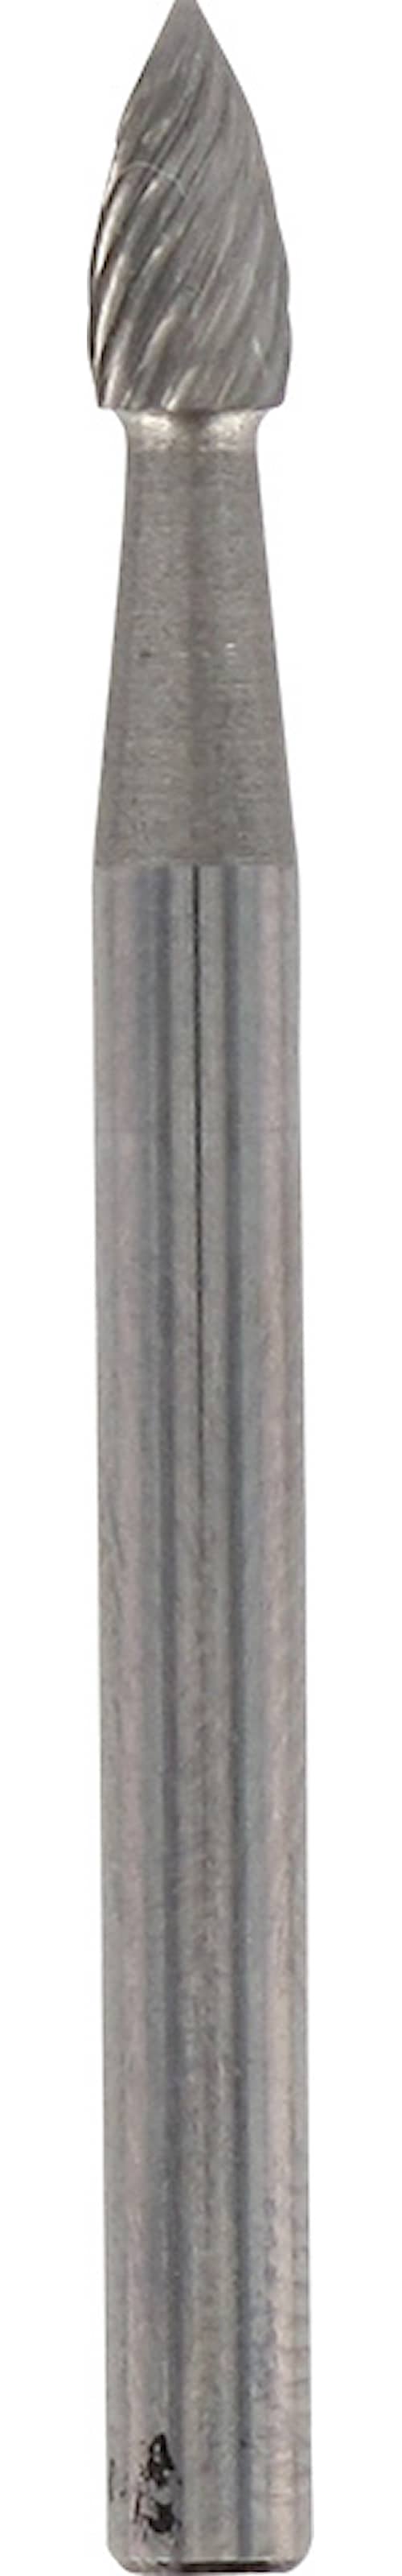 Dremel slibestift karbid 3,2 mm hårdmetal 9911